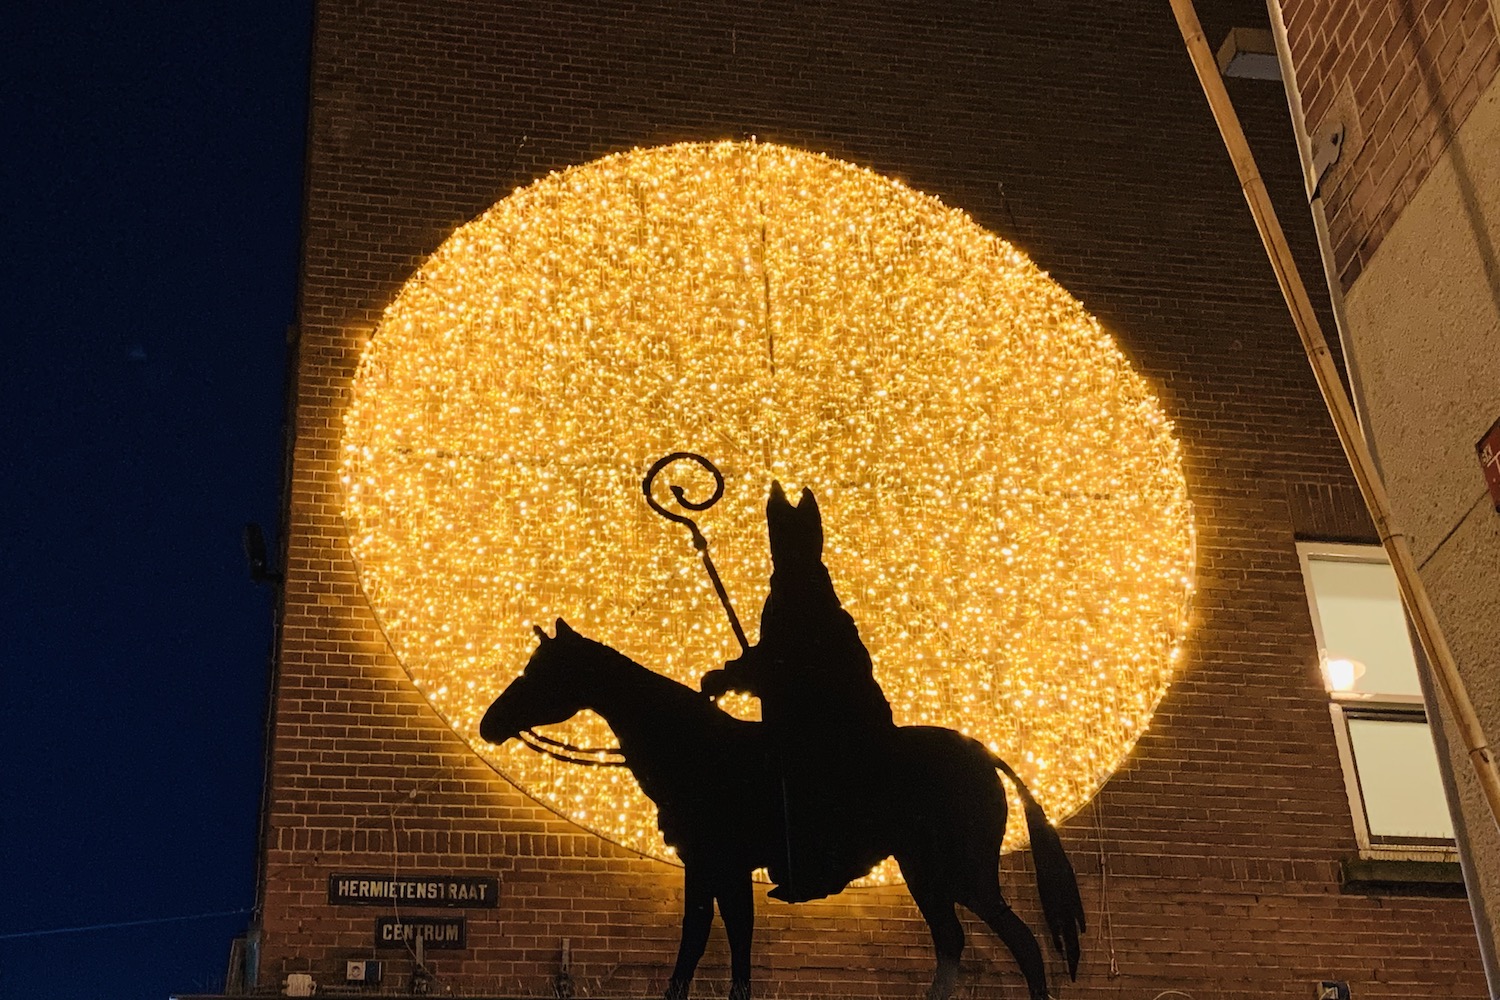 Sinterklaas op de muurgevel Scheltema in Amsterdam